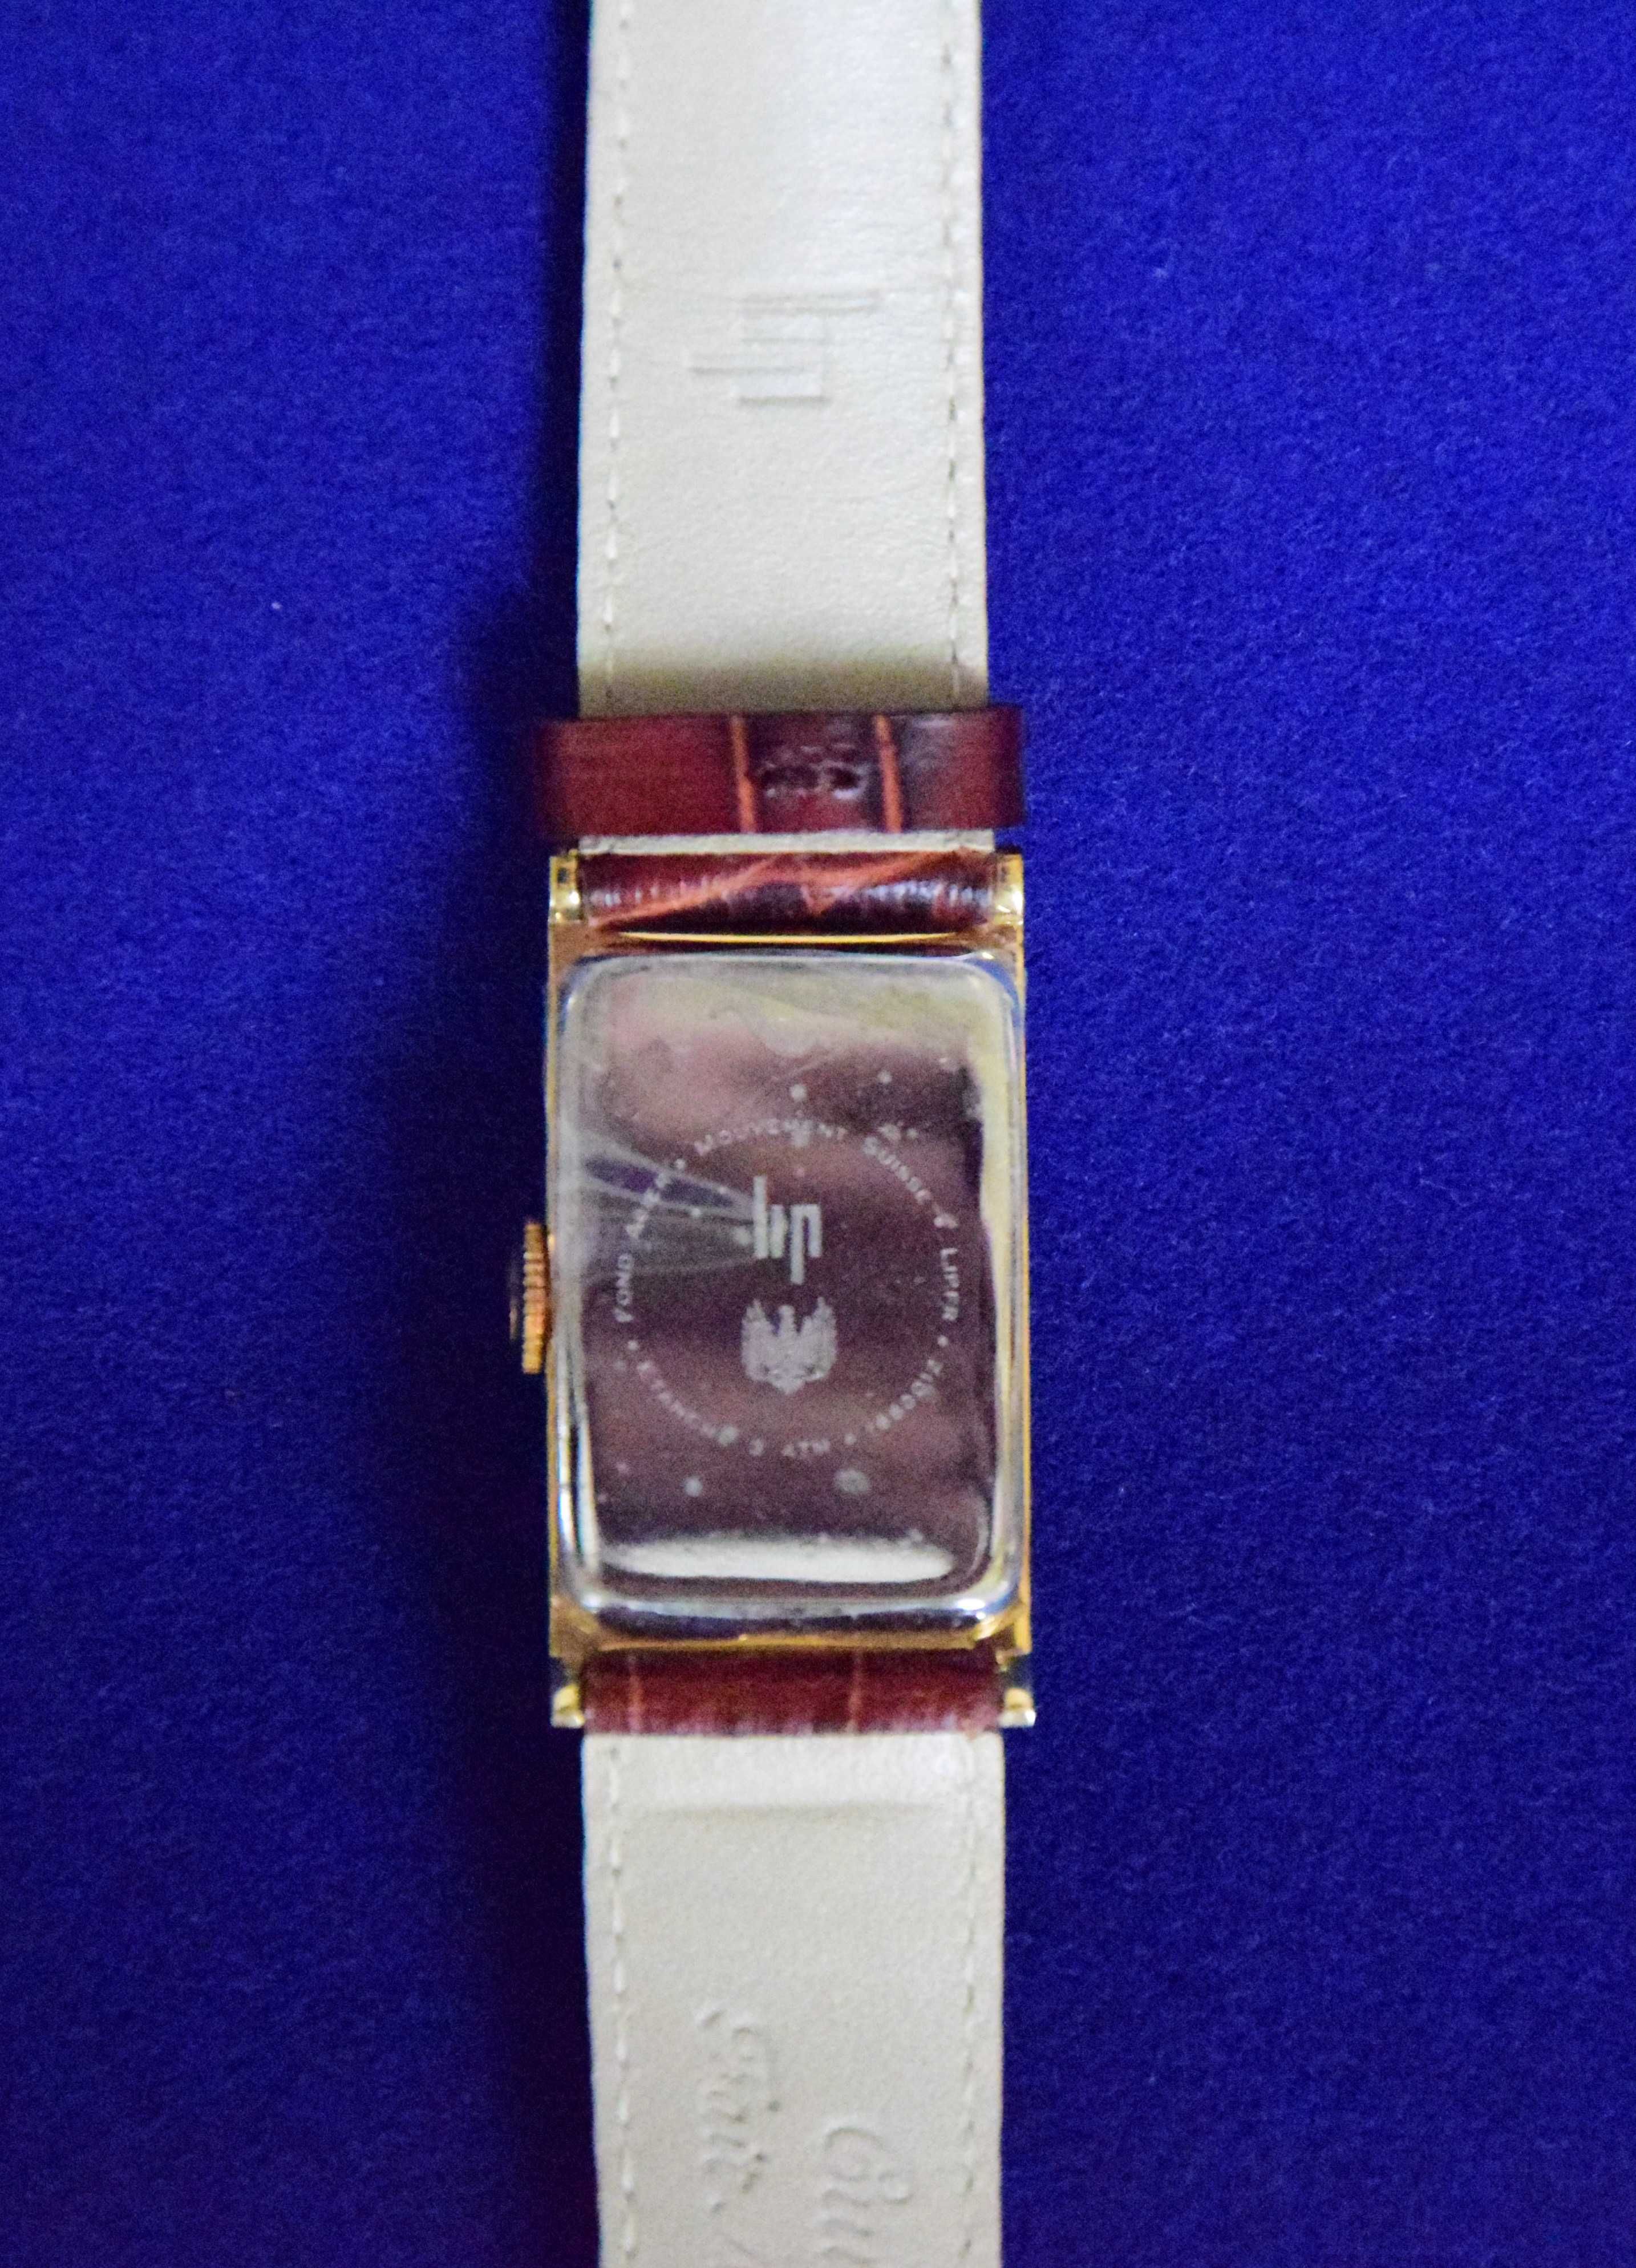 Relógio “LIP T18” modelo oferecido por De Gaulle a Churchill